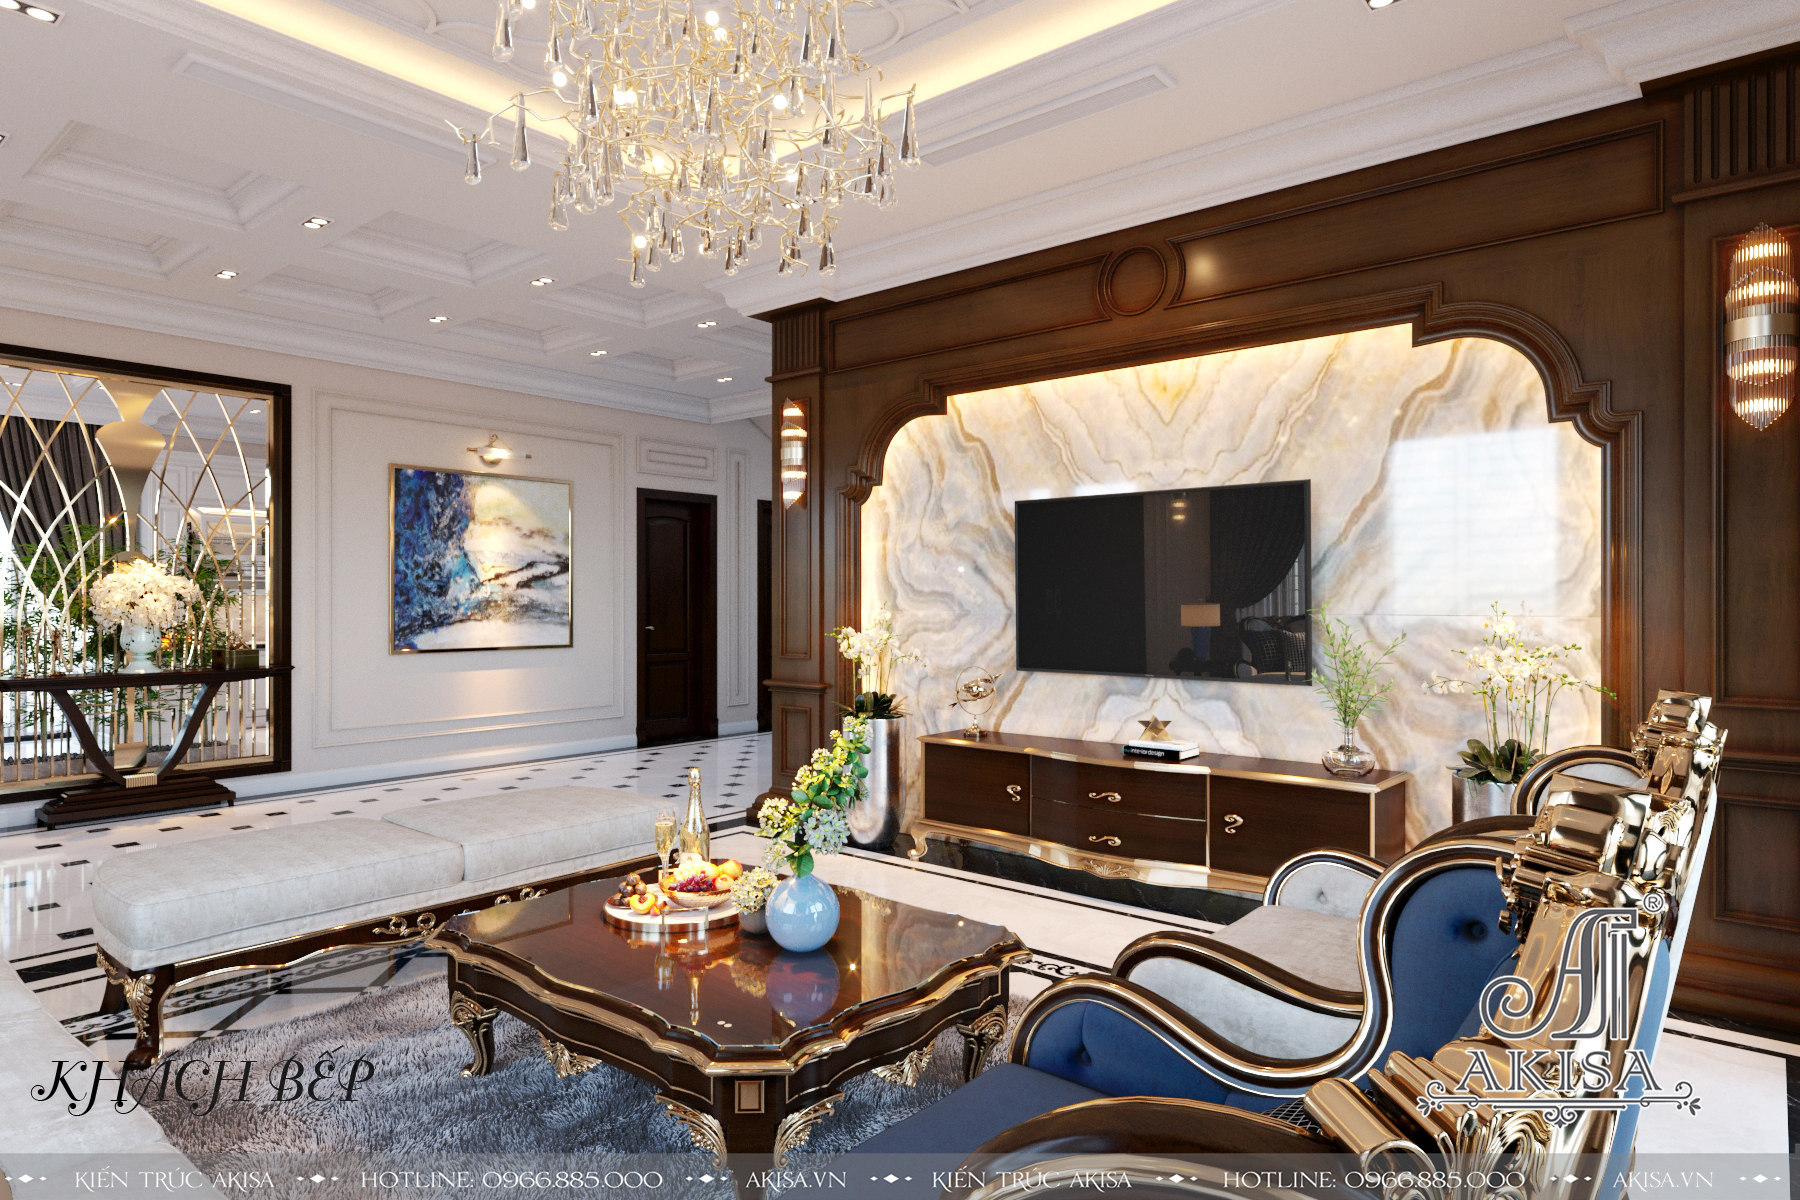 Phòng khách sang trọng với tông màu trắng, be làm chủ đạo với những vật dụng nội thất đơn giản nhưng không kém phần cuốn hút